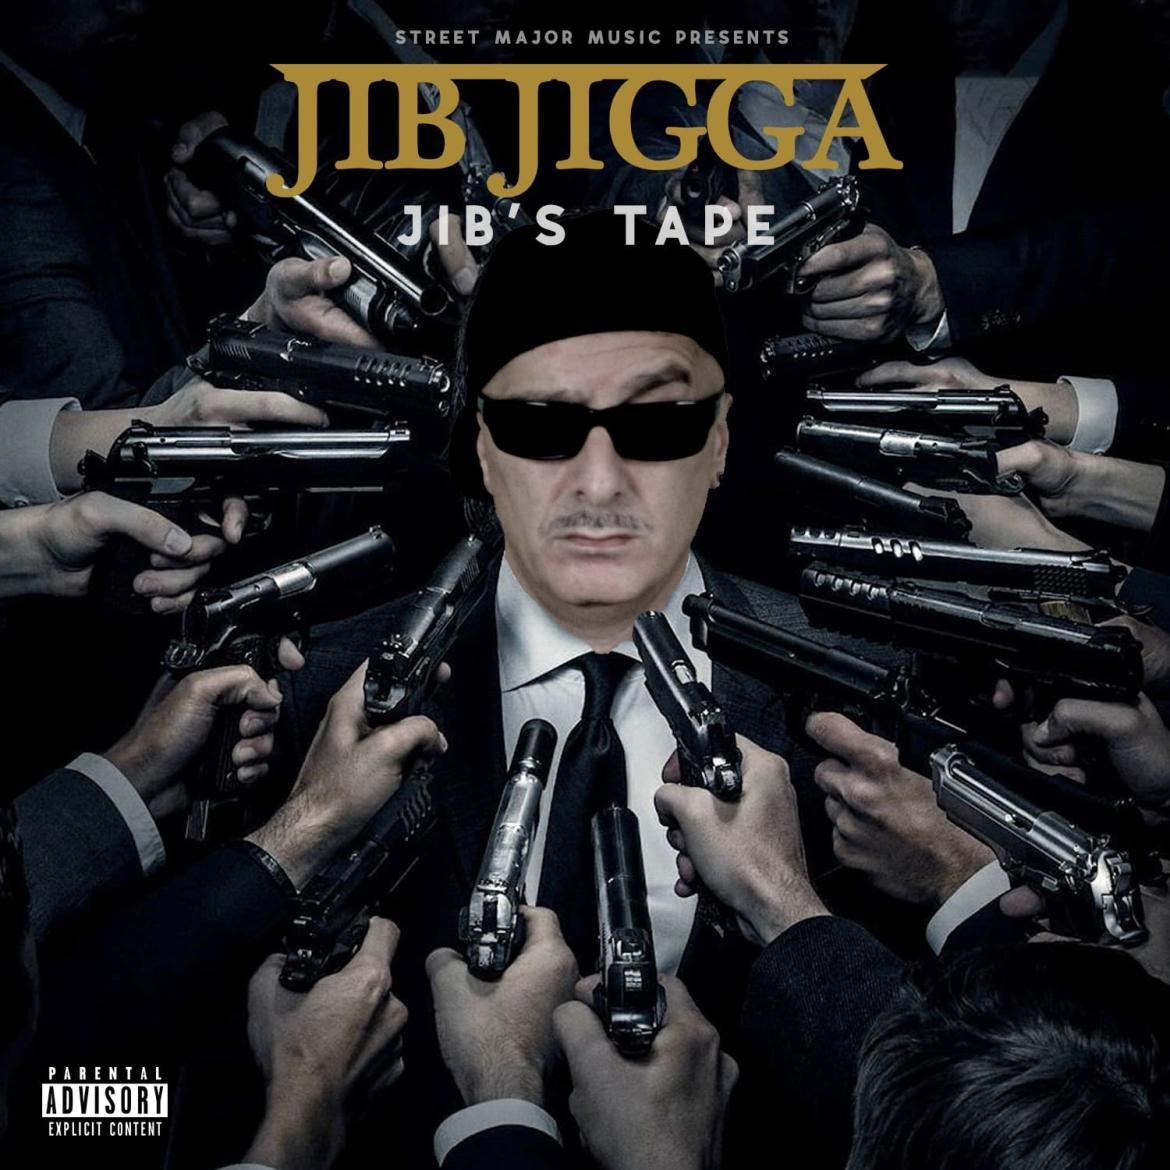 Jib Jigga - Jib’s Tape